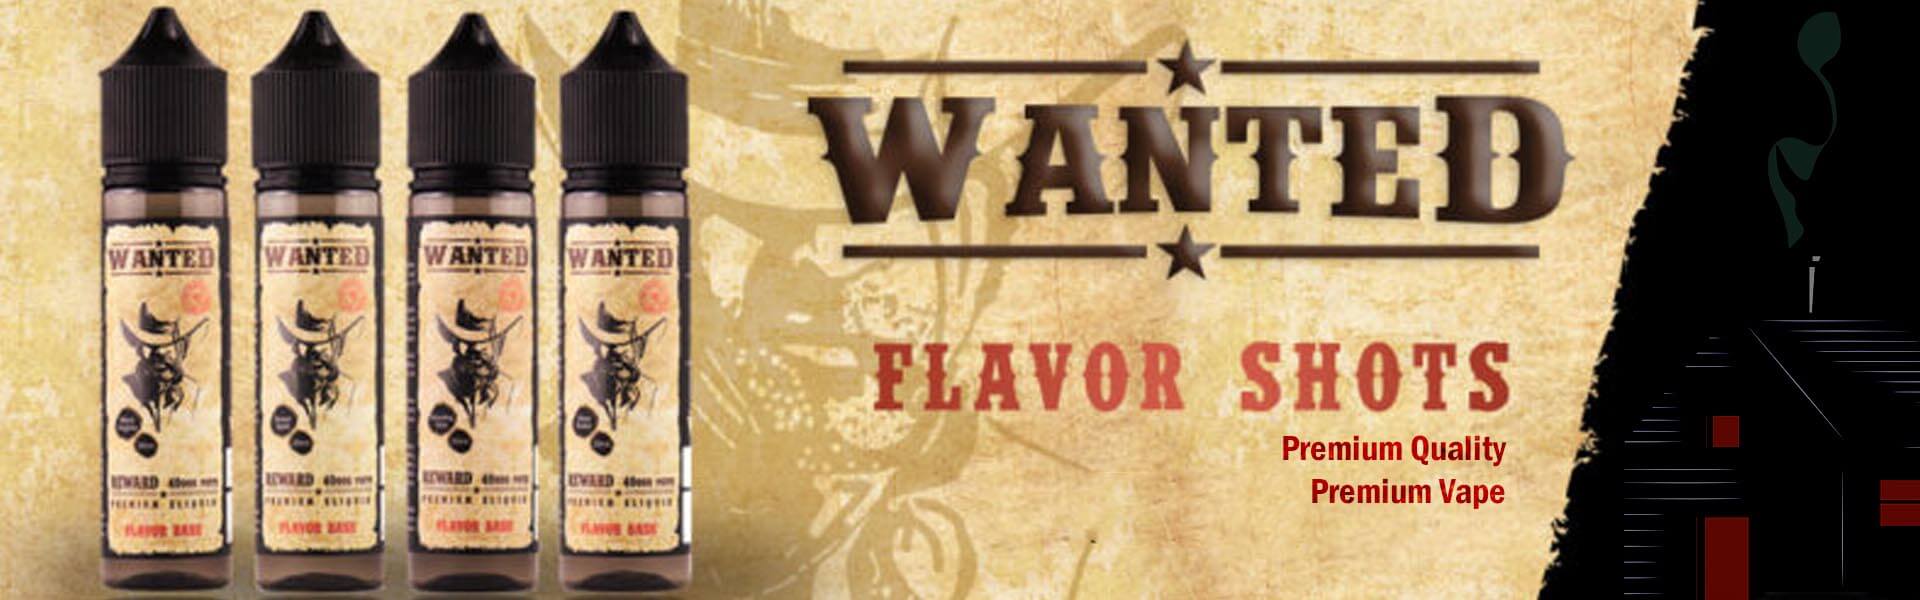 velvet vape wanted flavorshots banner